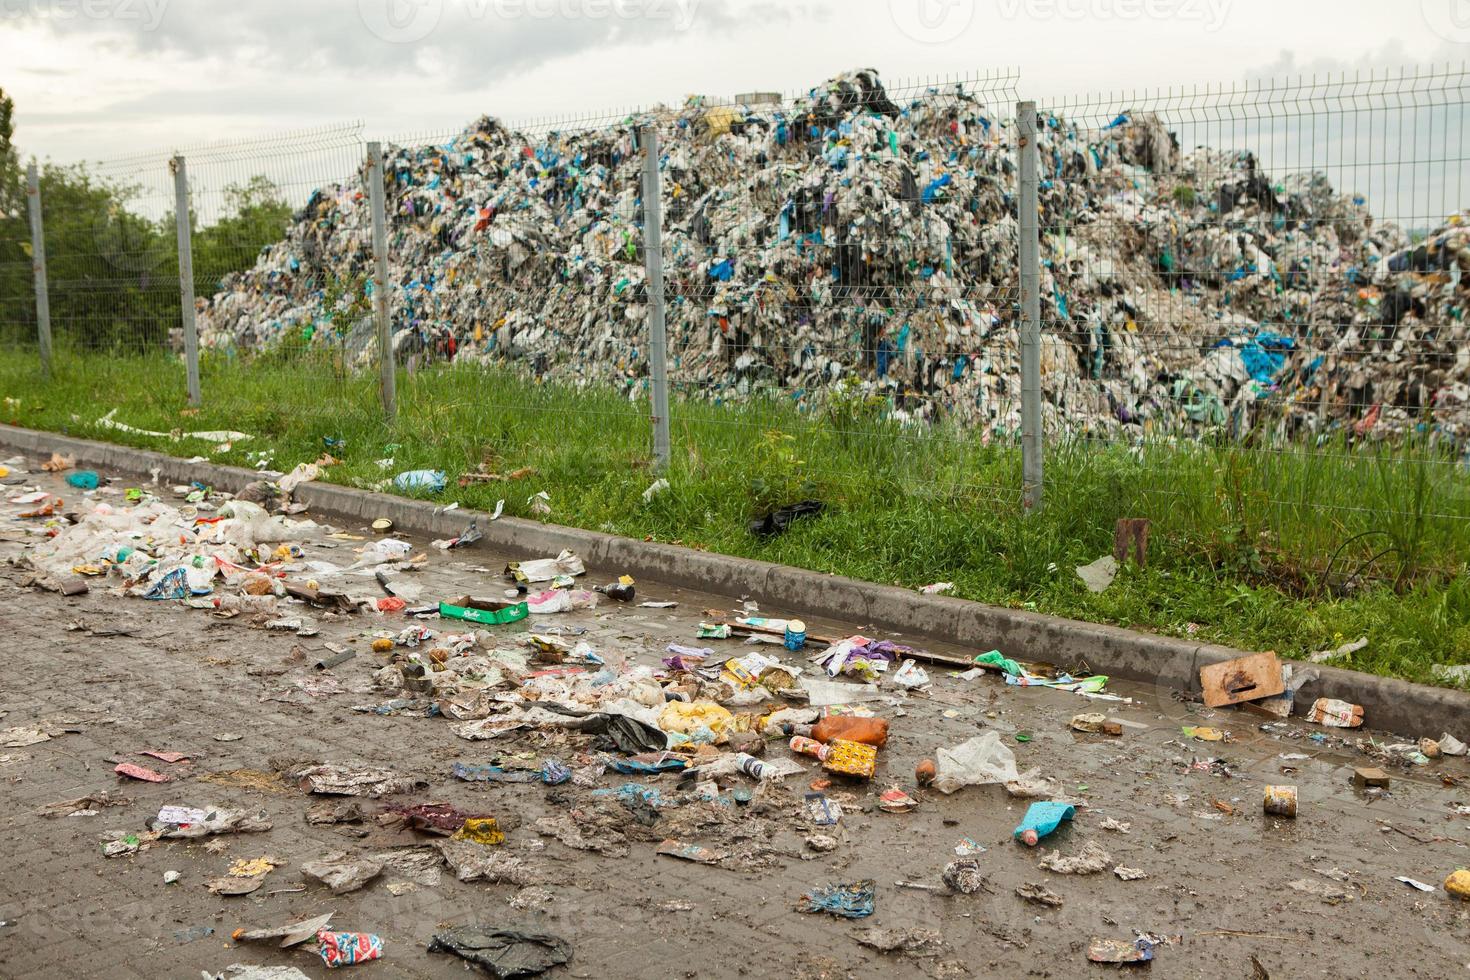 ramassage séparé des ordures. notion de pollution. déchets photo